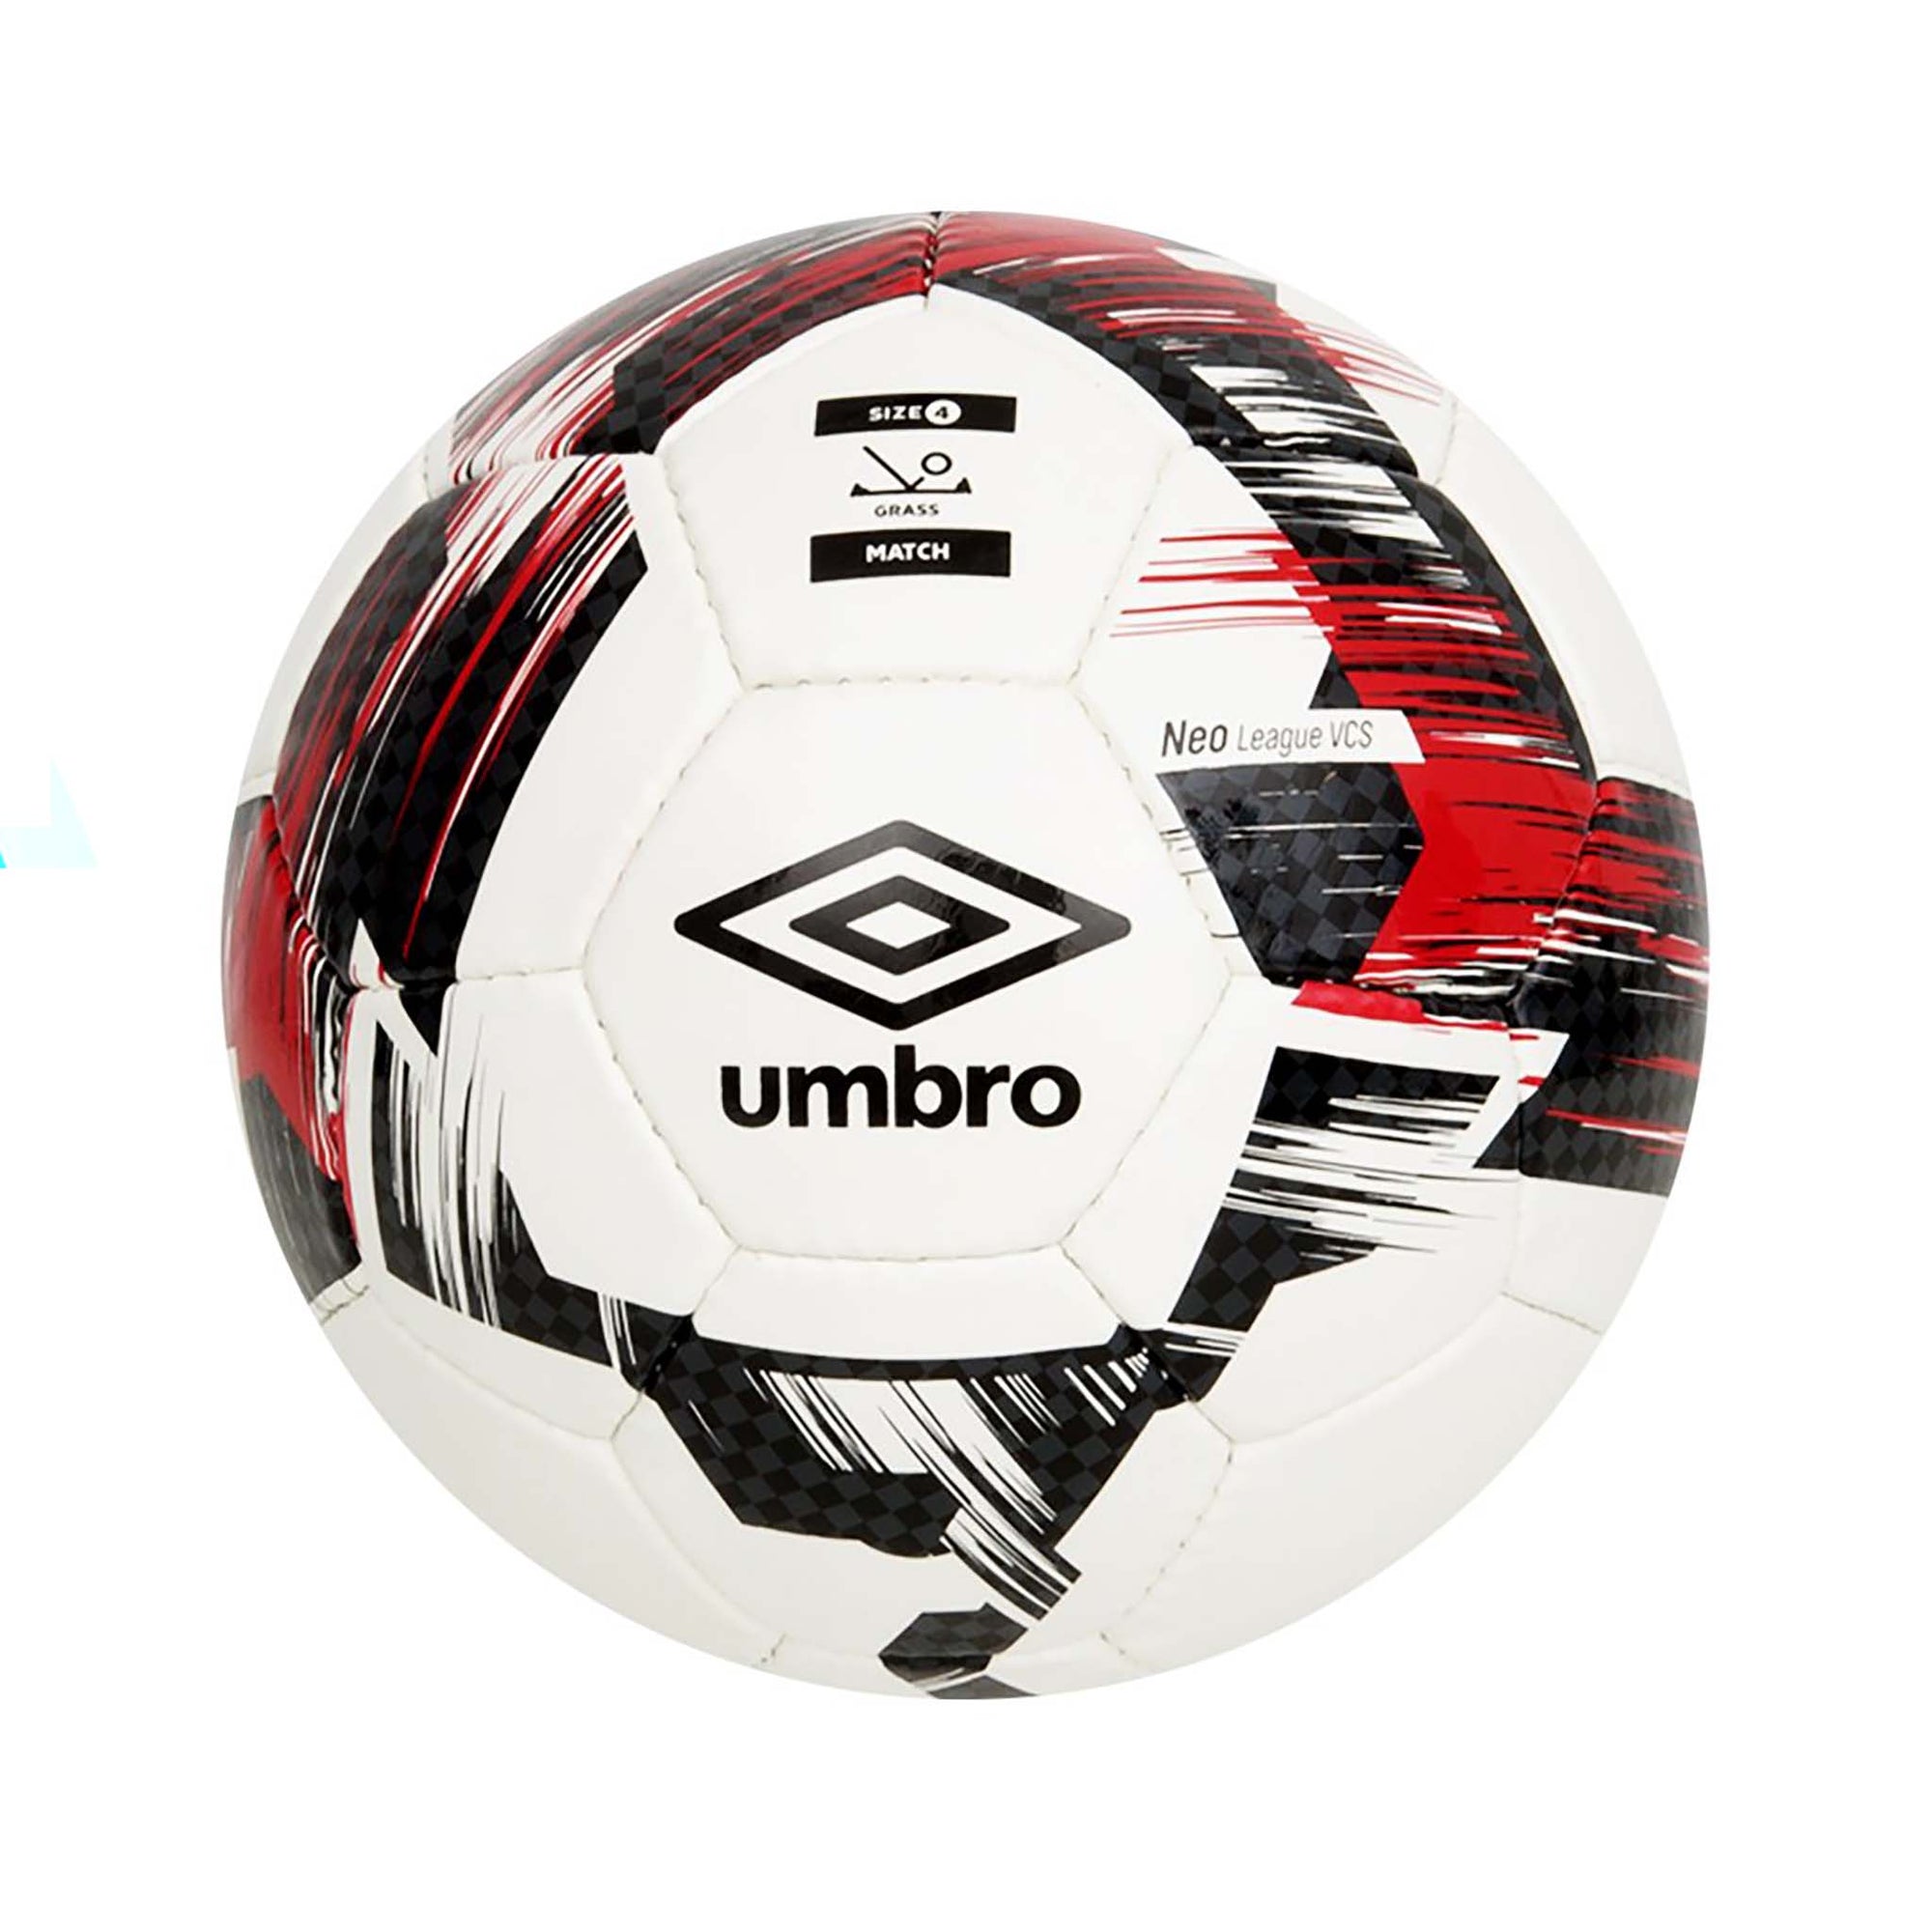 Umbro Neo League ballons de soccer